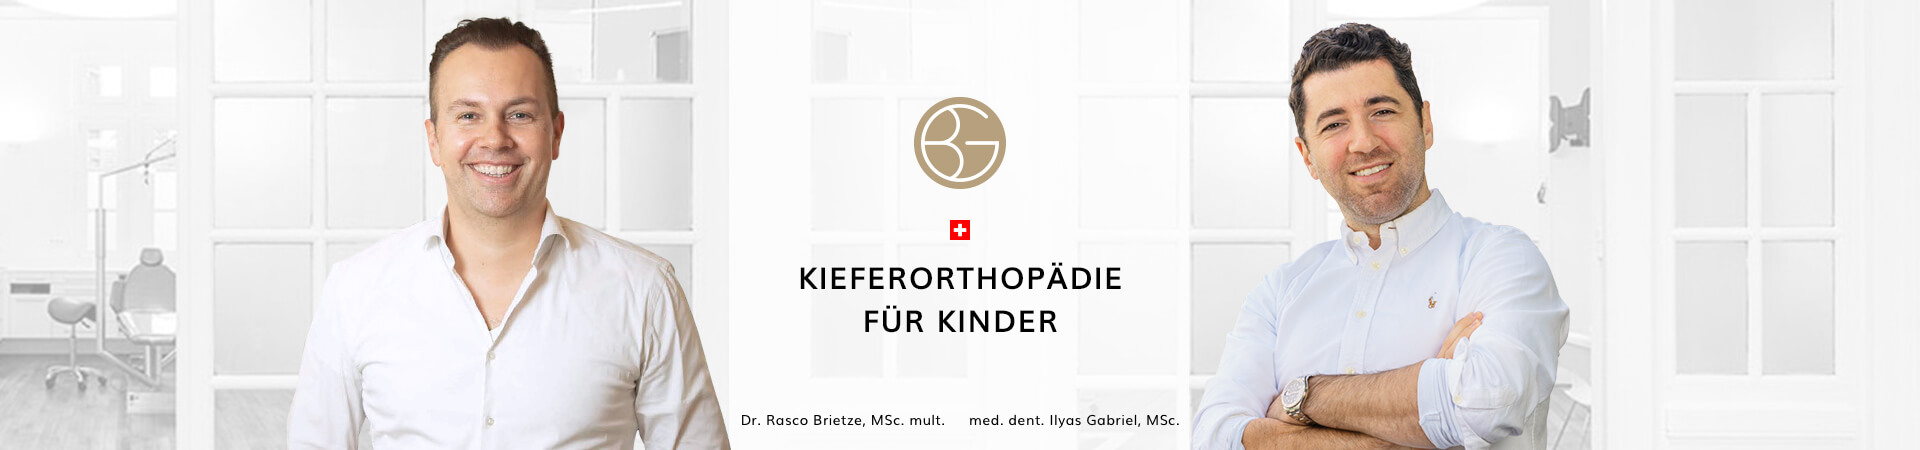 Kieferorthopädie Kinder, Zahnärzte Ebmatingen, Dr. Brietze & Dr. Gabriel 